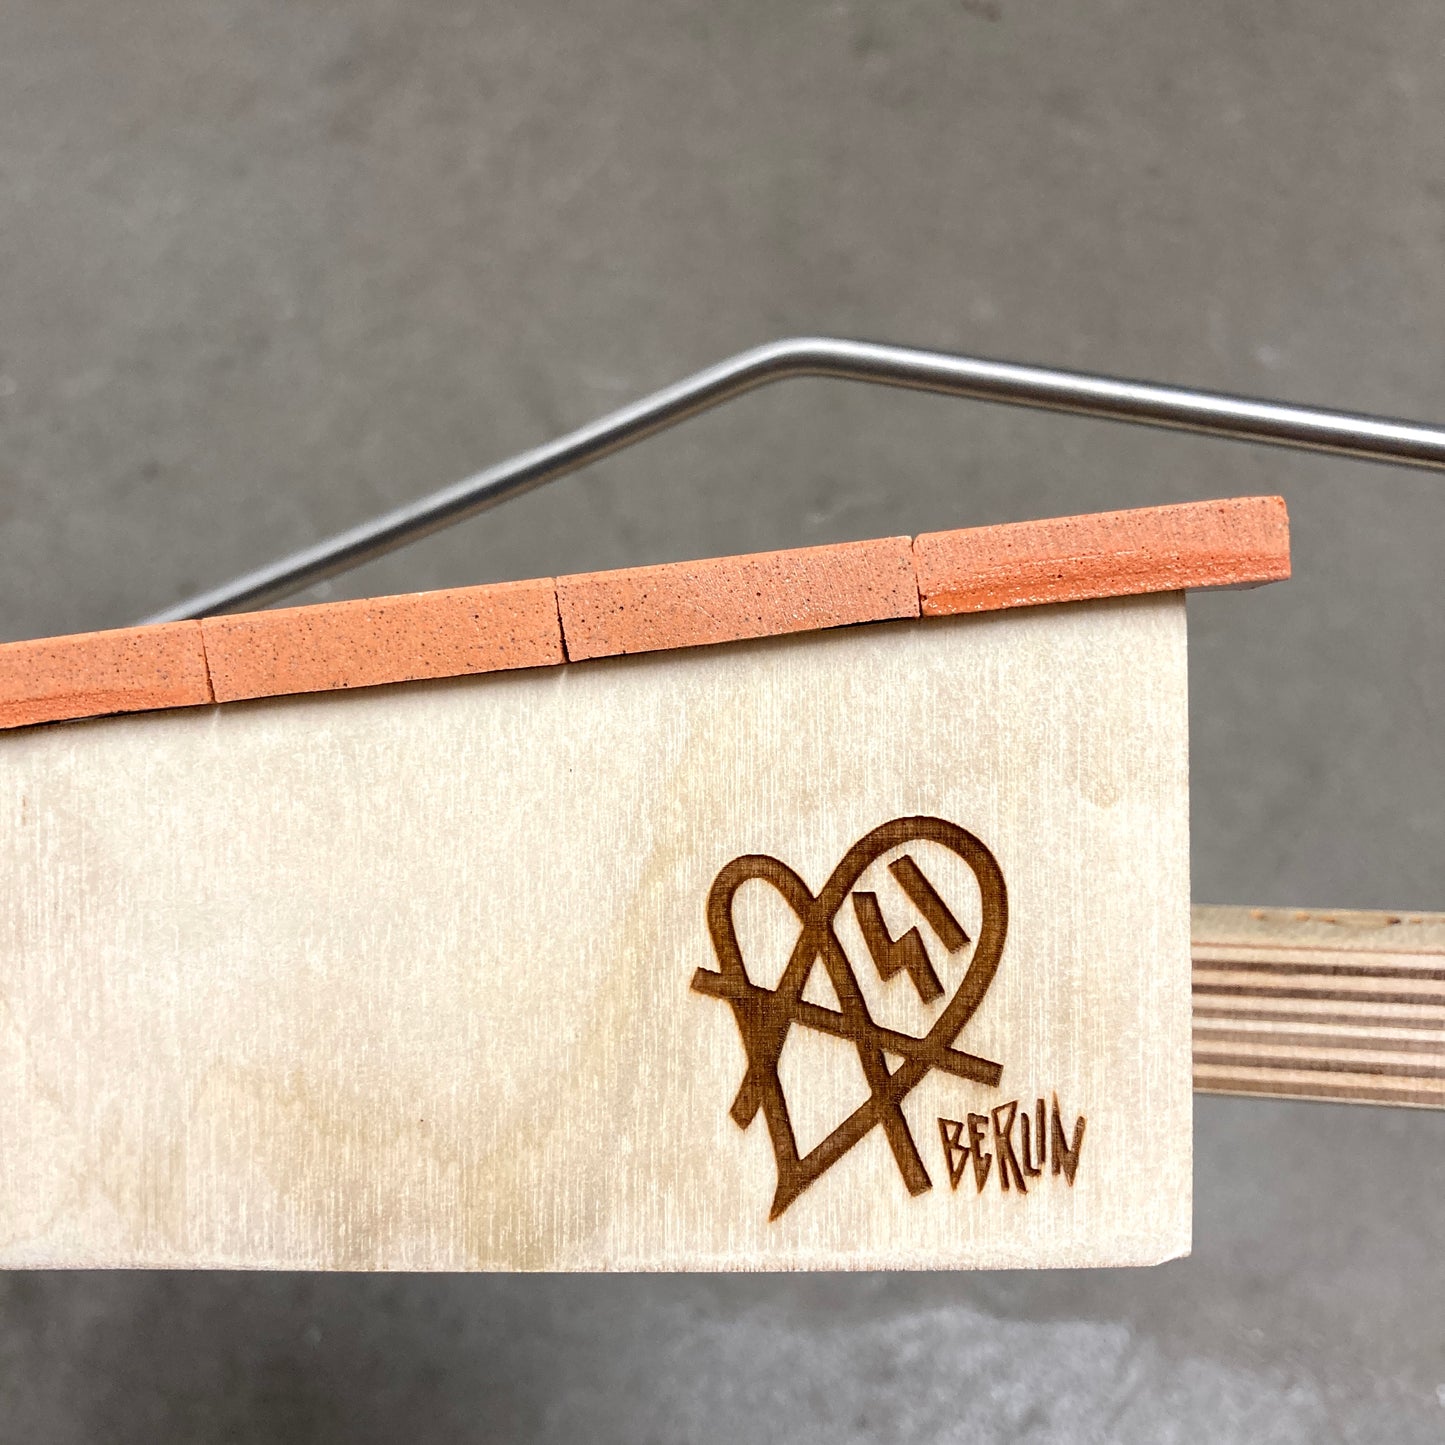 WoodOn Fingerboard Ramps